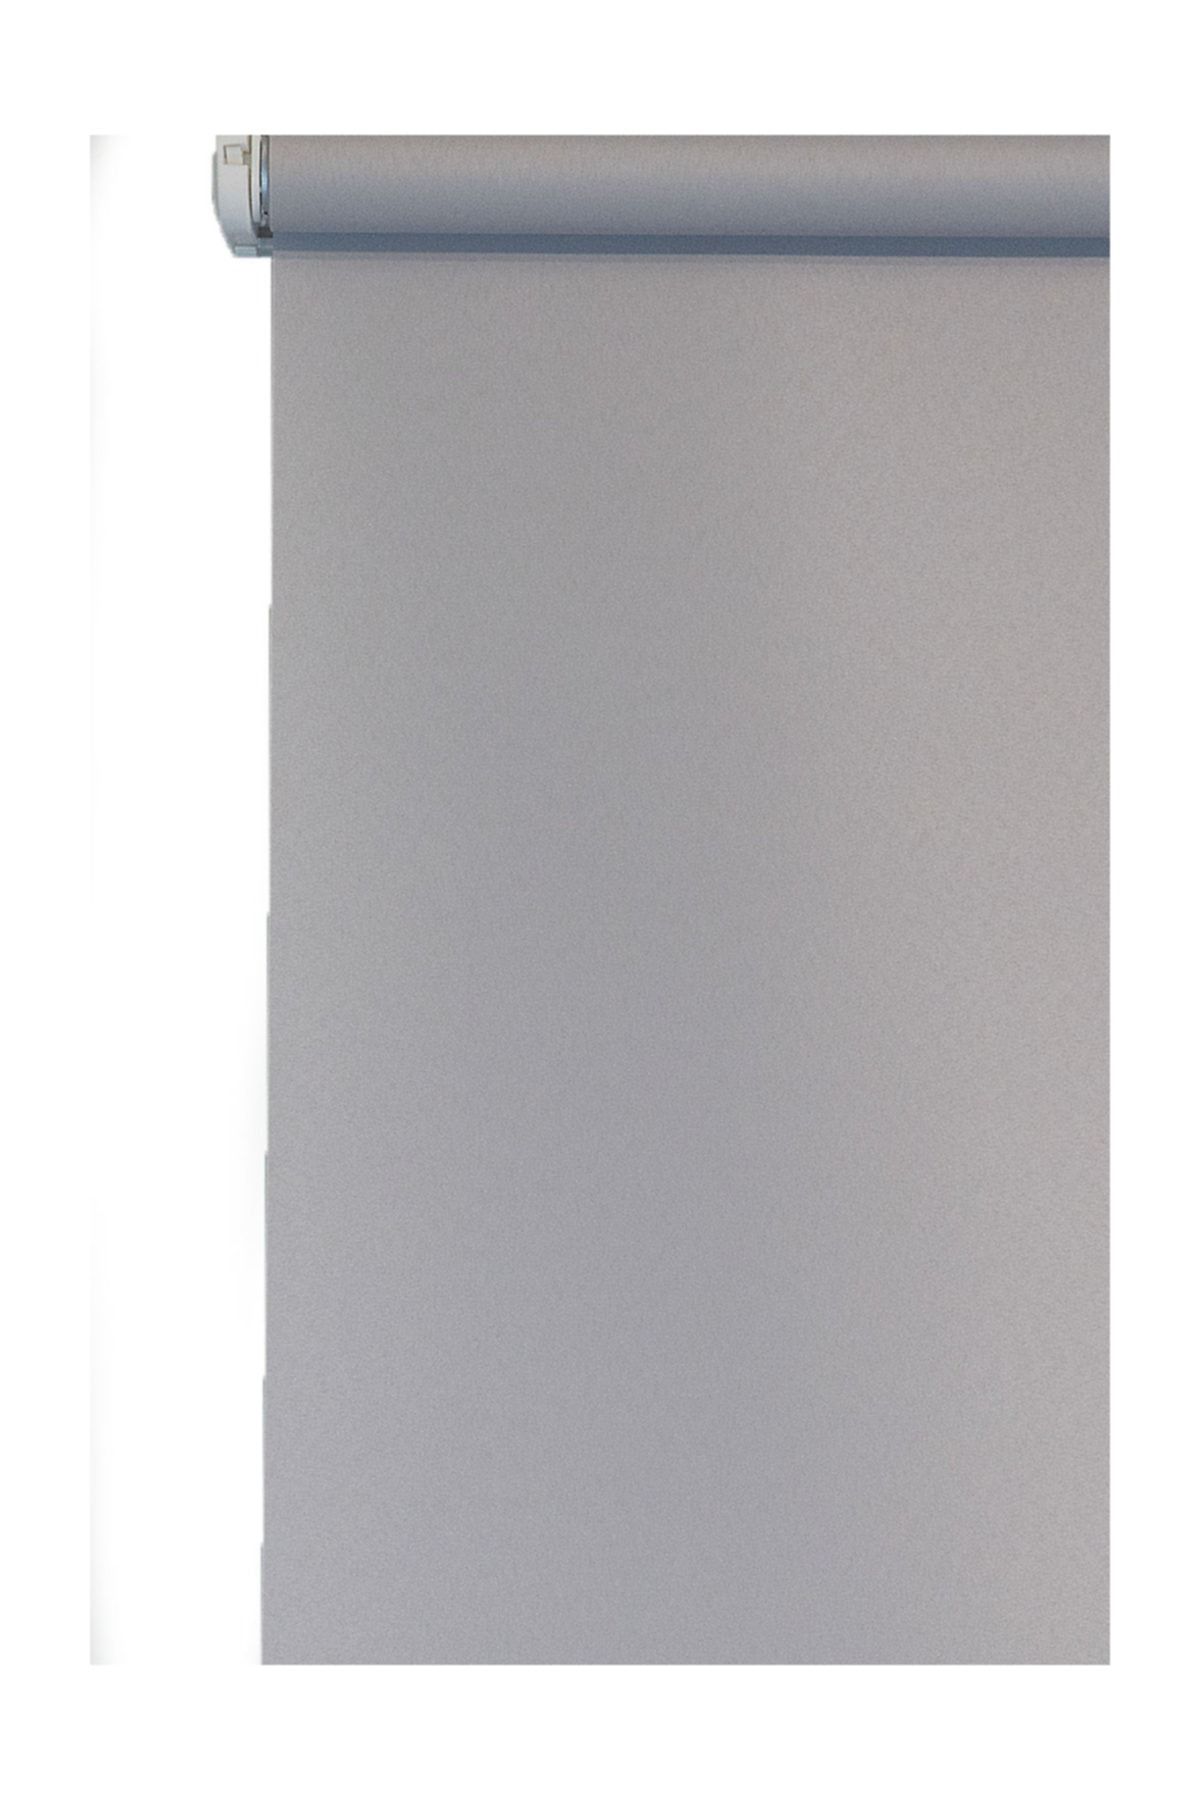 Efor Polyester Serisi Koyu Gri 180x200 cm